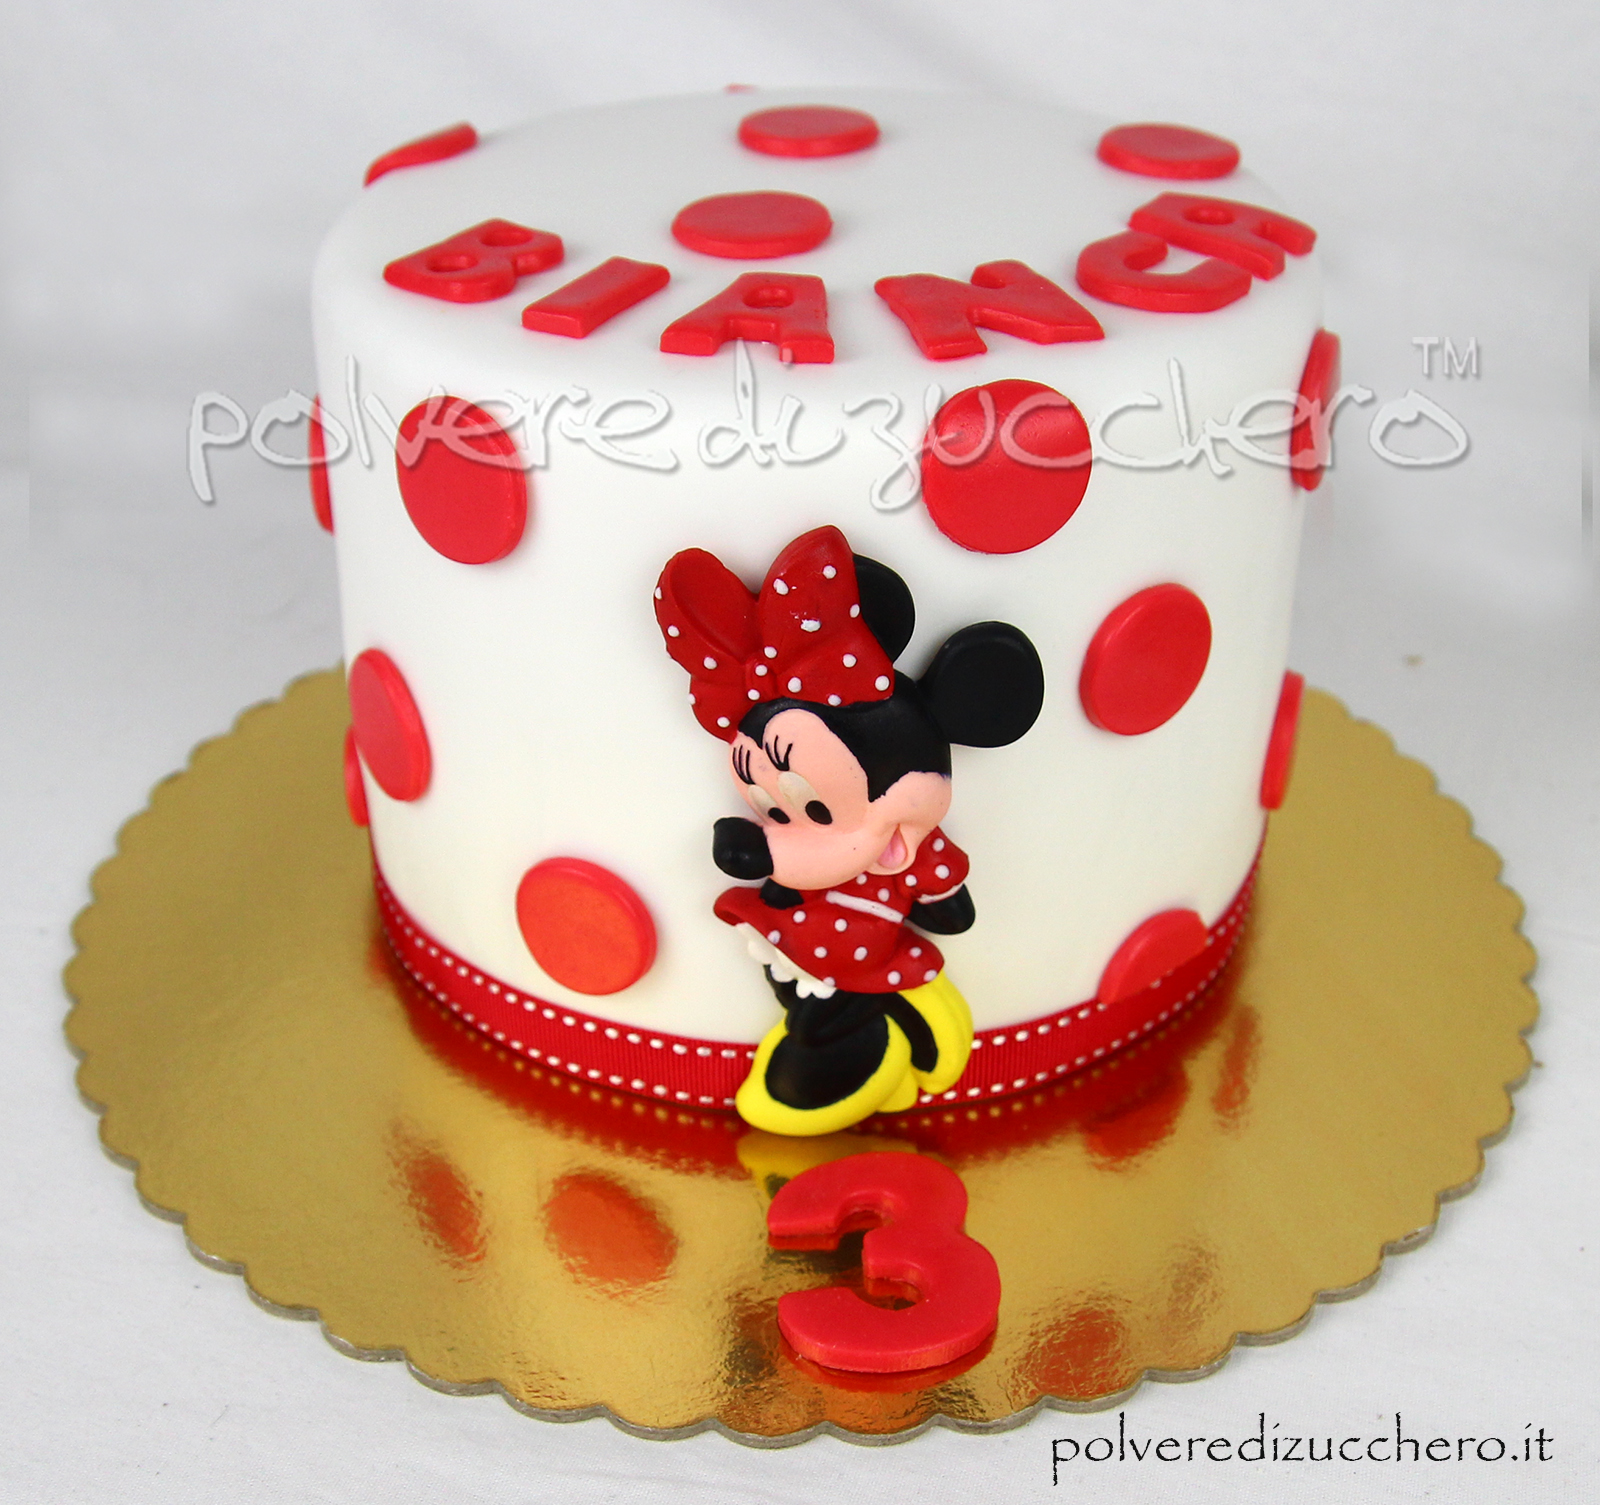 torta decorata cake design Como pasta di zucchero minnie topolino compleanno gemelli varese milano chiasso mendrisio lugano ticino